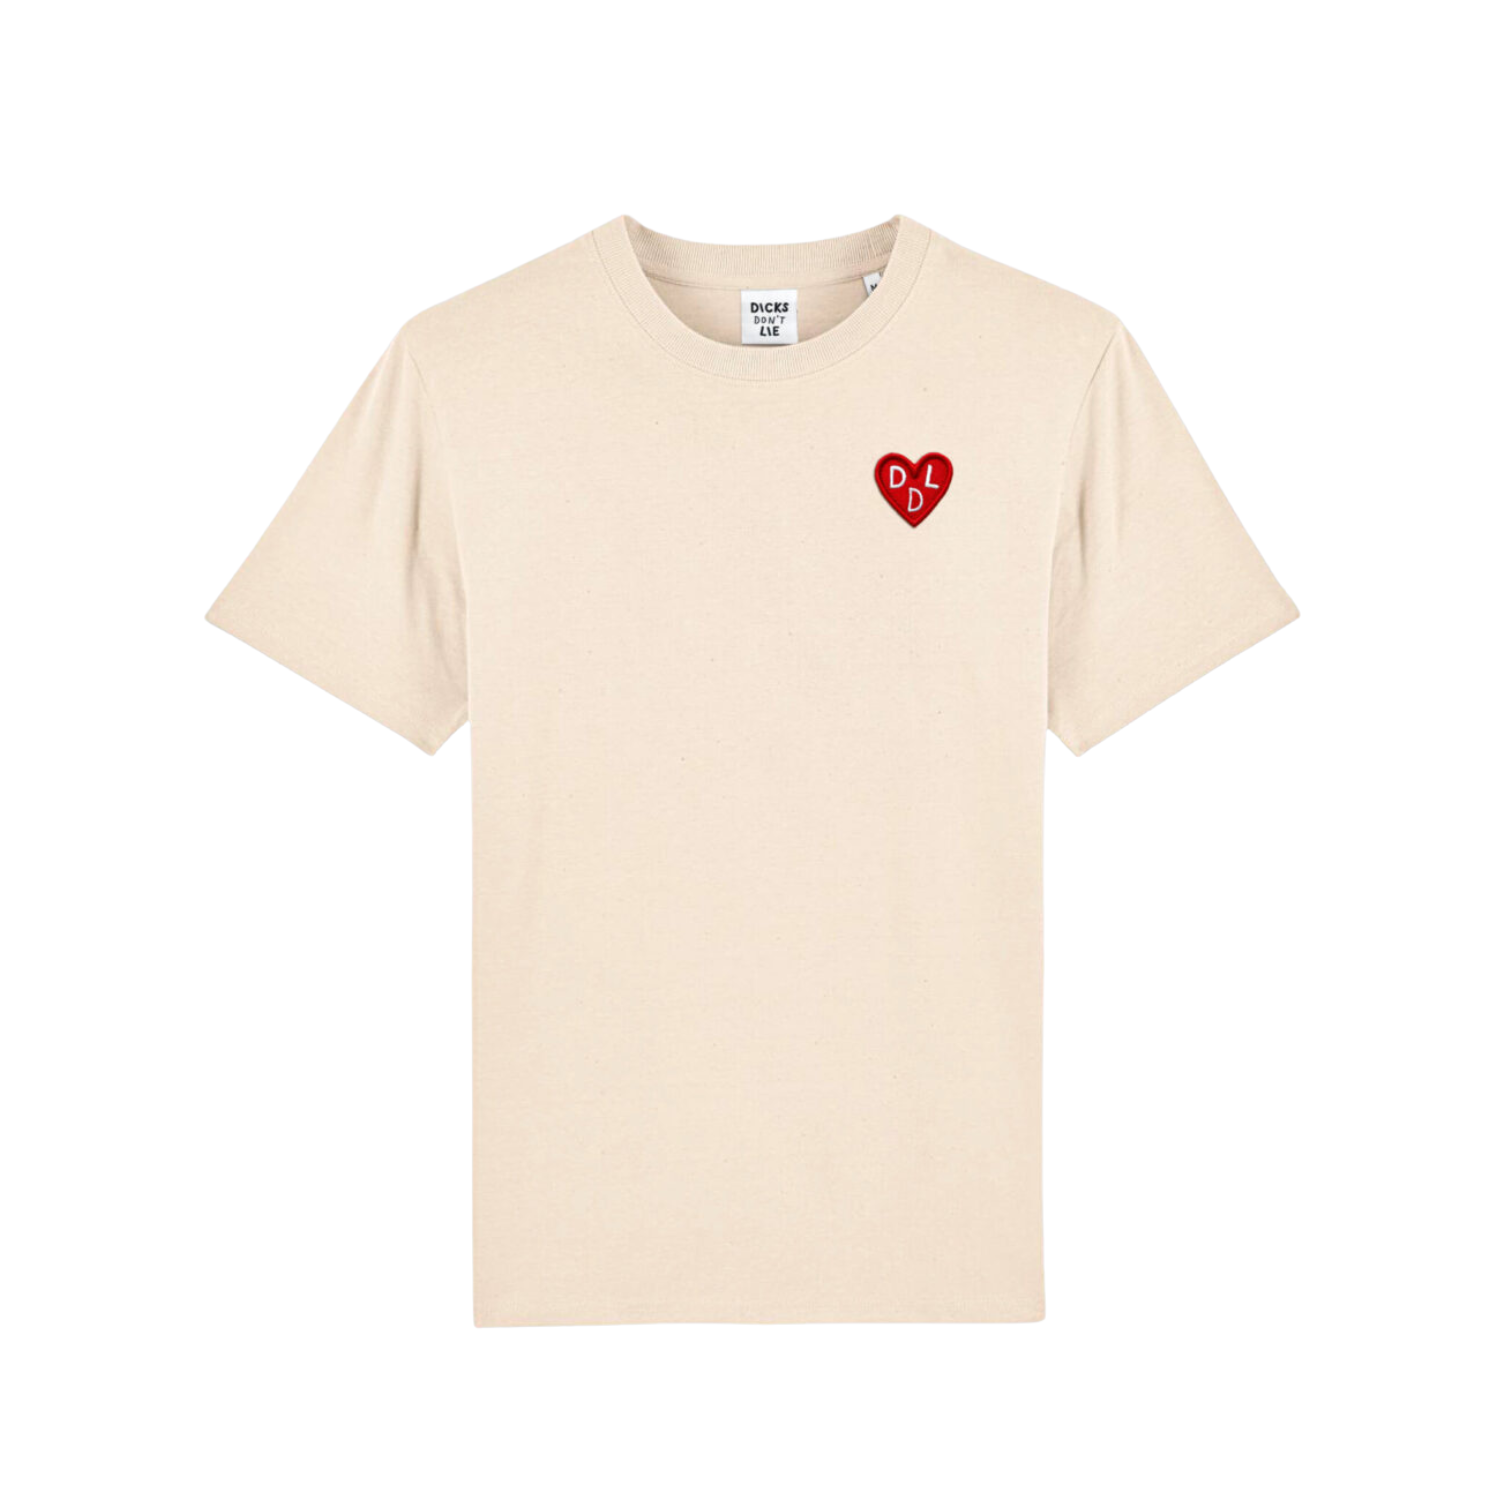 Beige DDL van het merk Dicks Don't Lie T-shirt perfect voor gay mannen en te koop bij Flavourez.